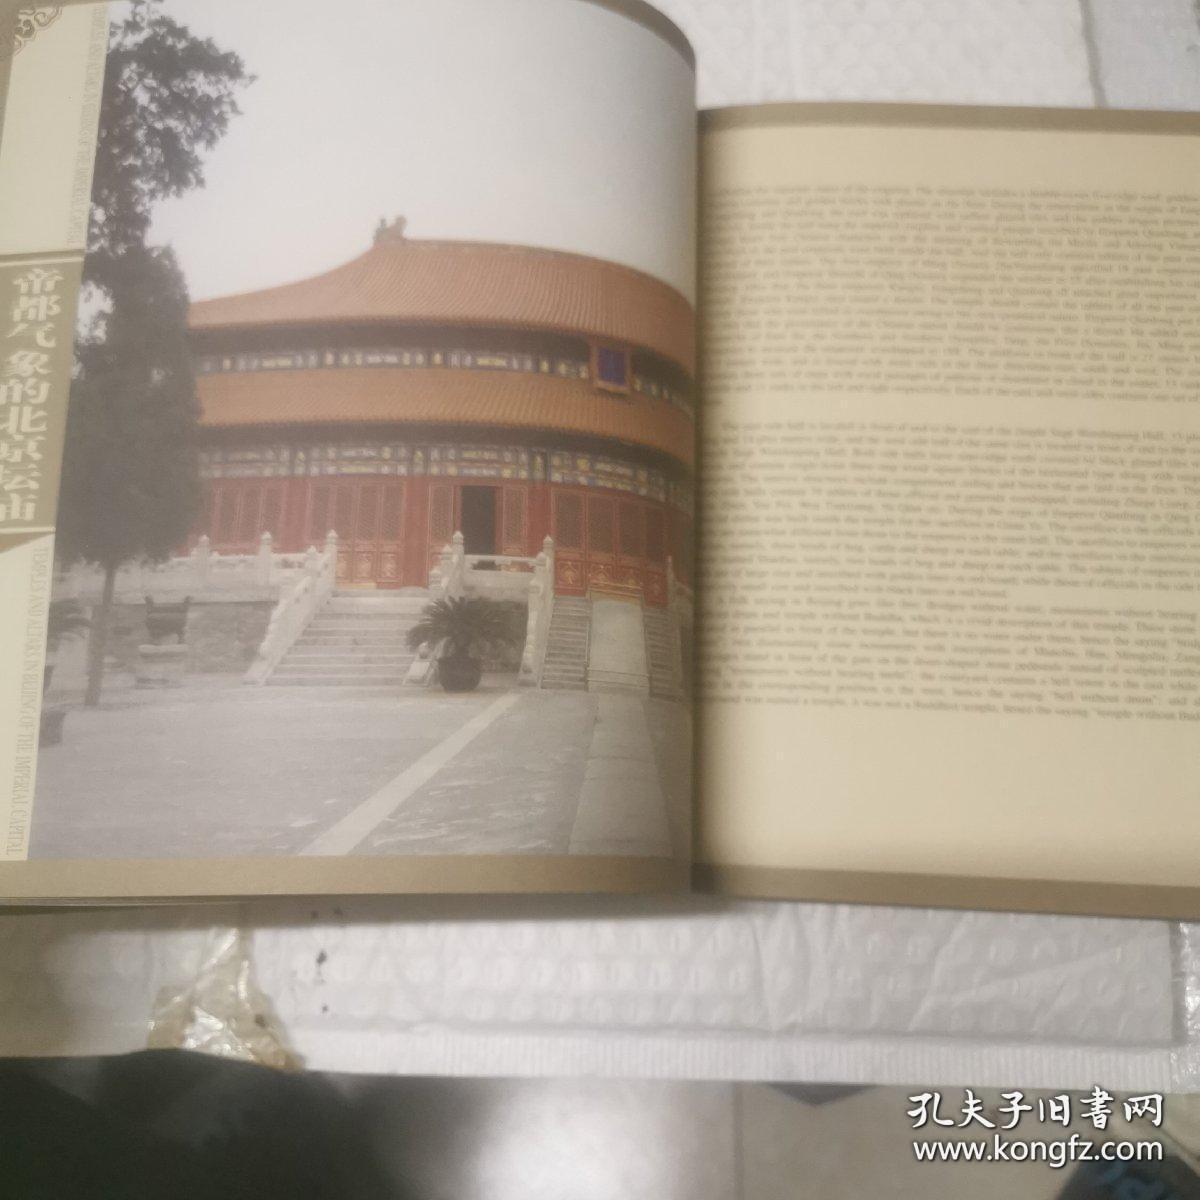 北京印花税票之四。北京坛庙。就是一本书。